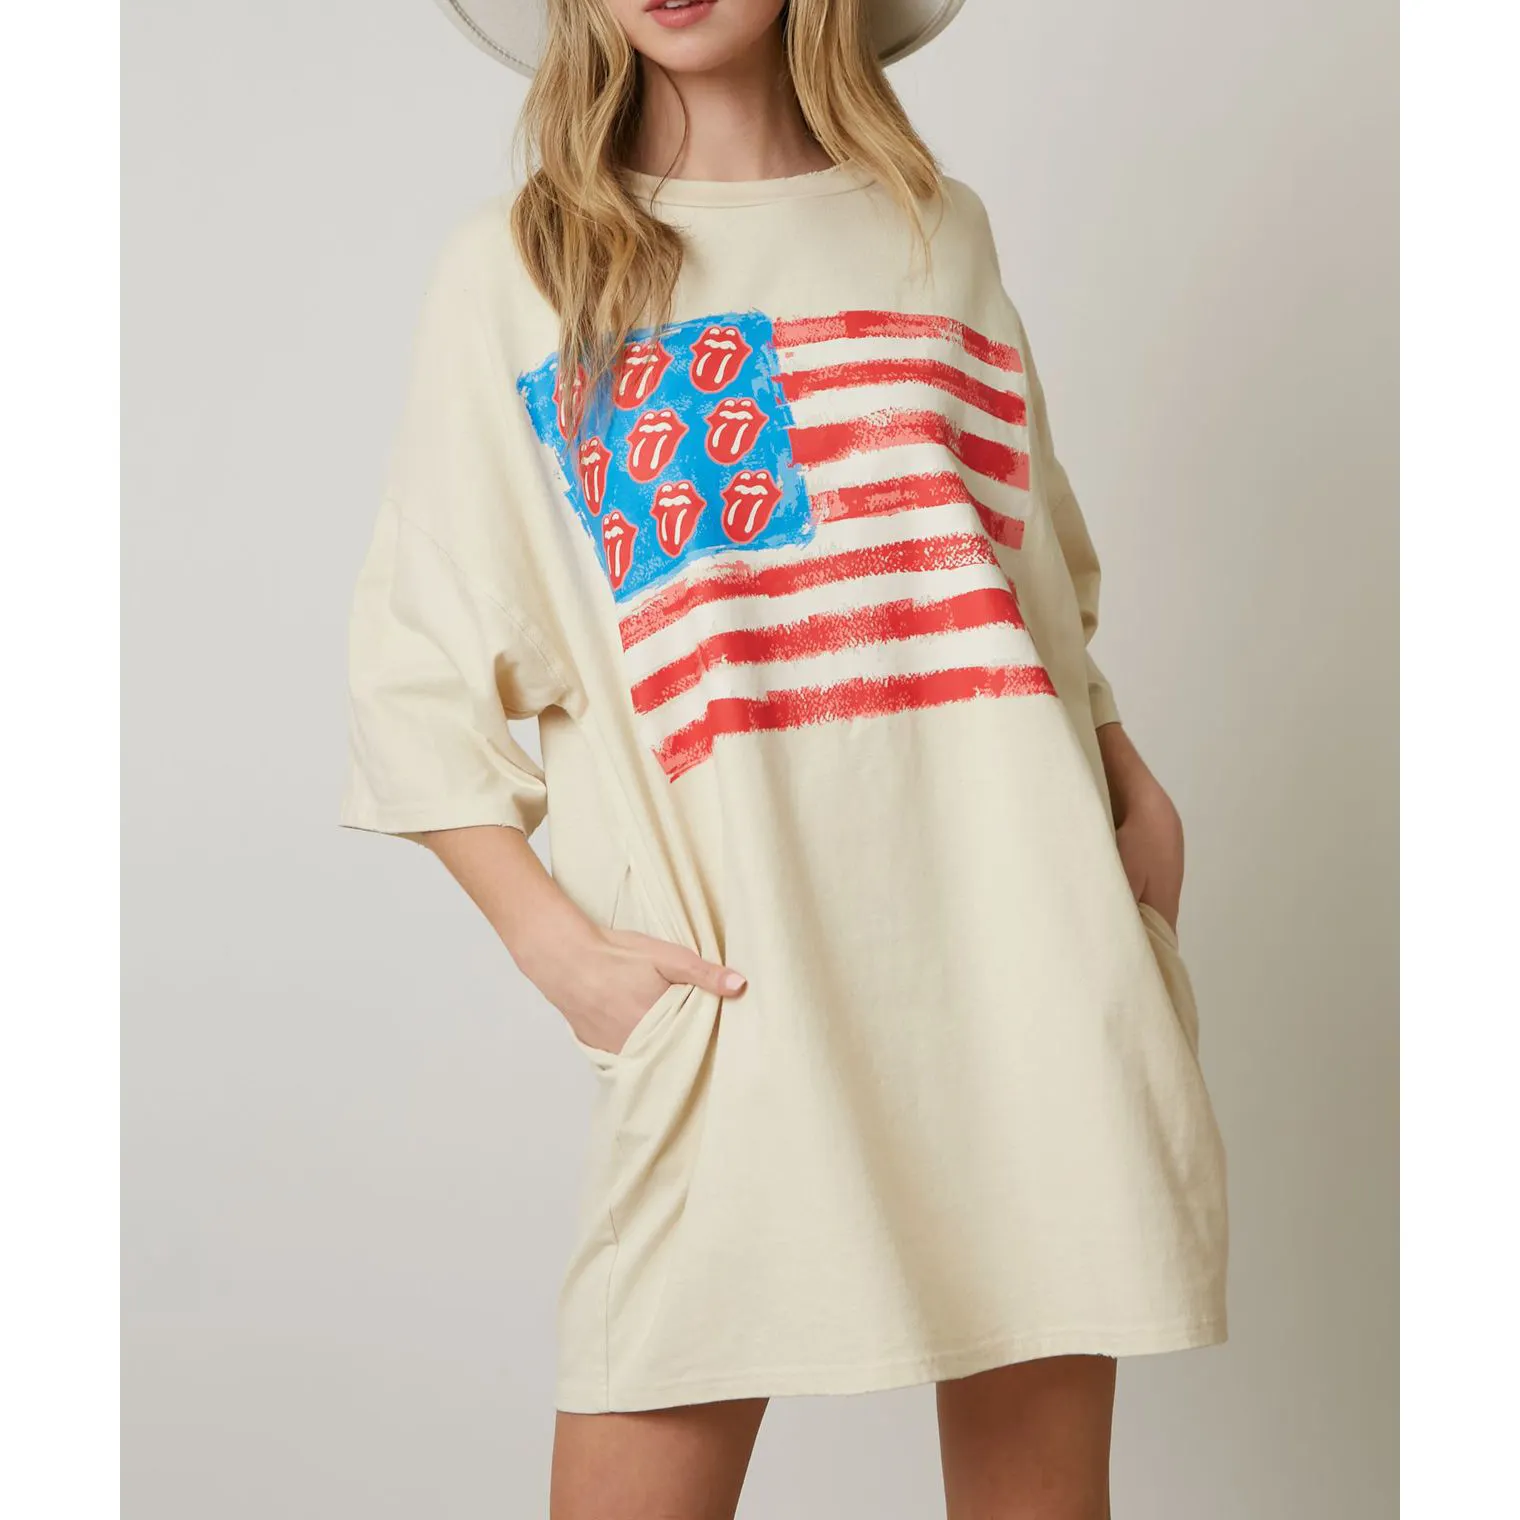 Loveda individuelles halbärmliges Freizeithemd Kleid Damen elegantes Unabhängigkeitstag-T-Shirt Übergröße Bluse Damenkleidung Pullover